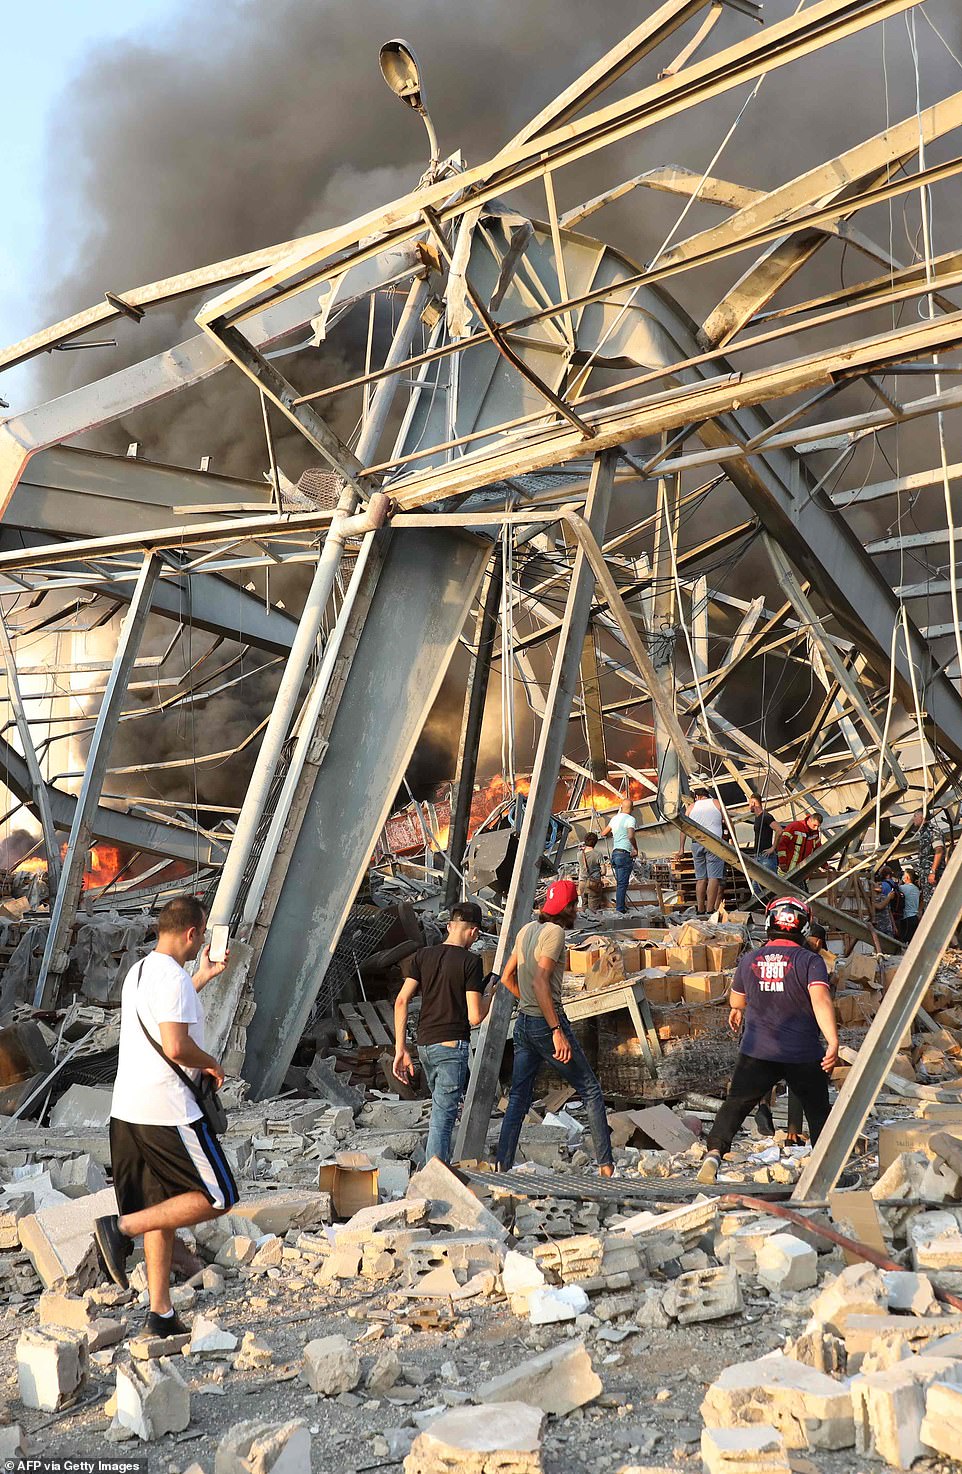 هز انفجار كبير العاصمة اللبنانية بيروت اليوم. ووقع الانفجار الذي هز مباني كاملة وكسر الزجاج في أجزاء عديدة من المدينة